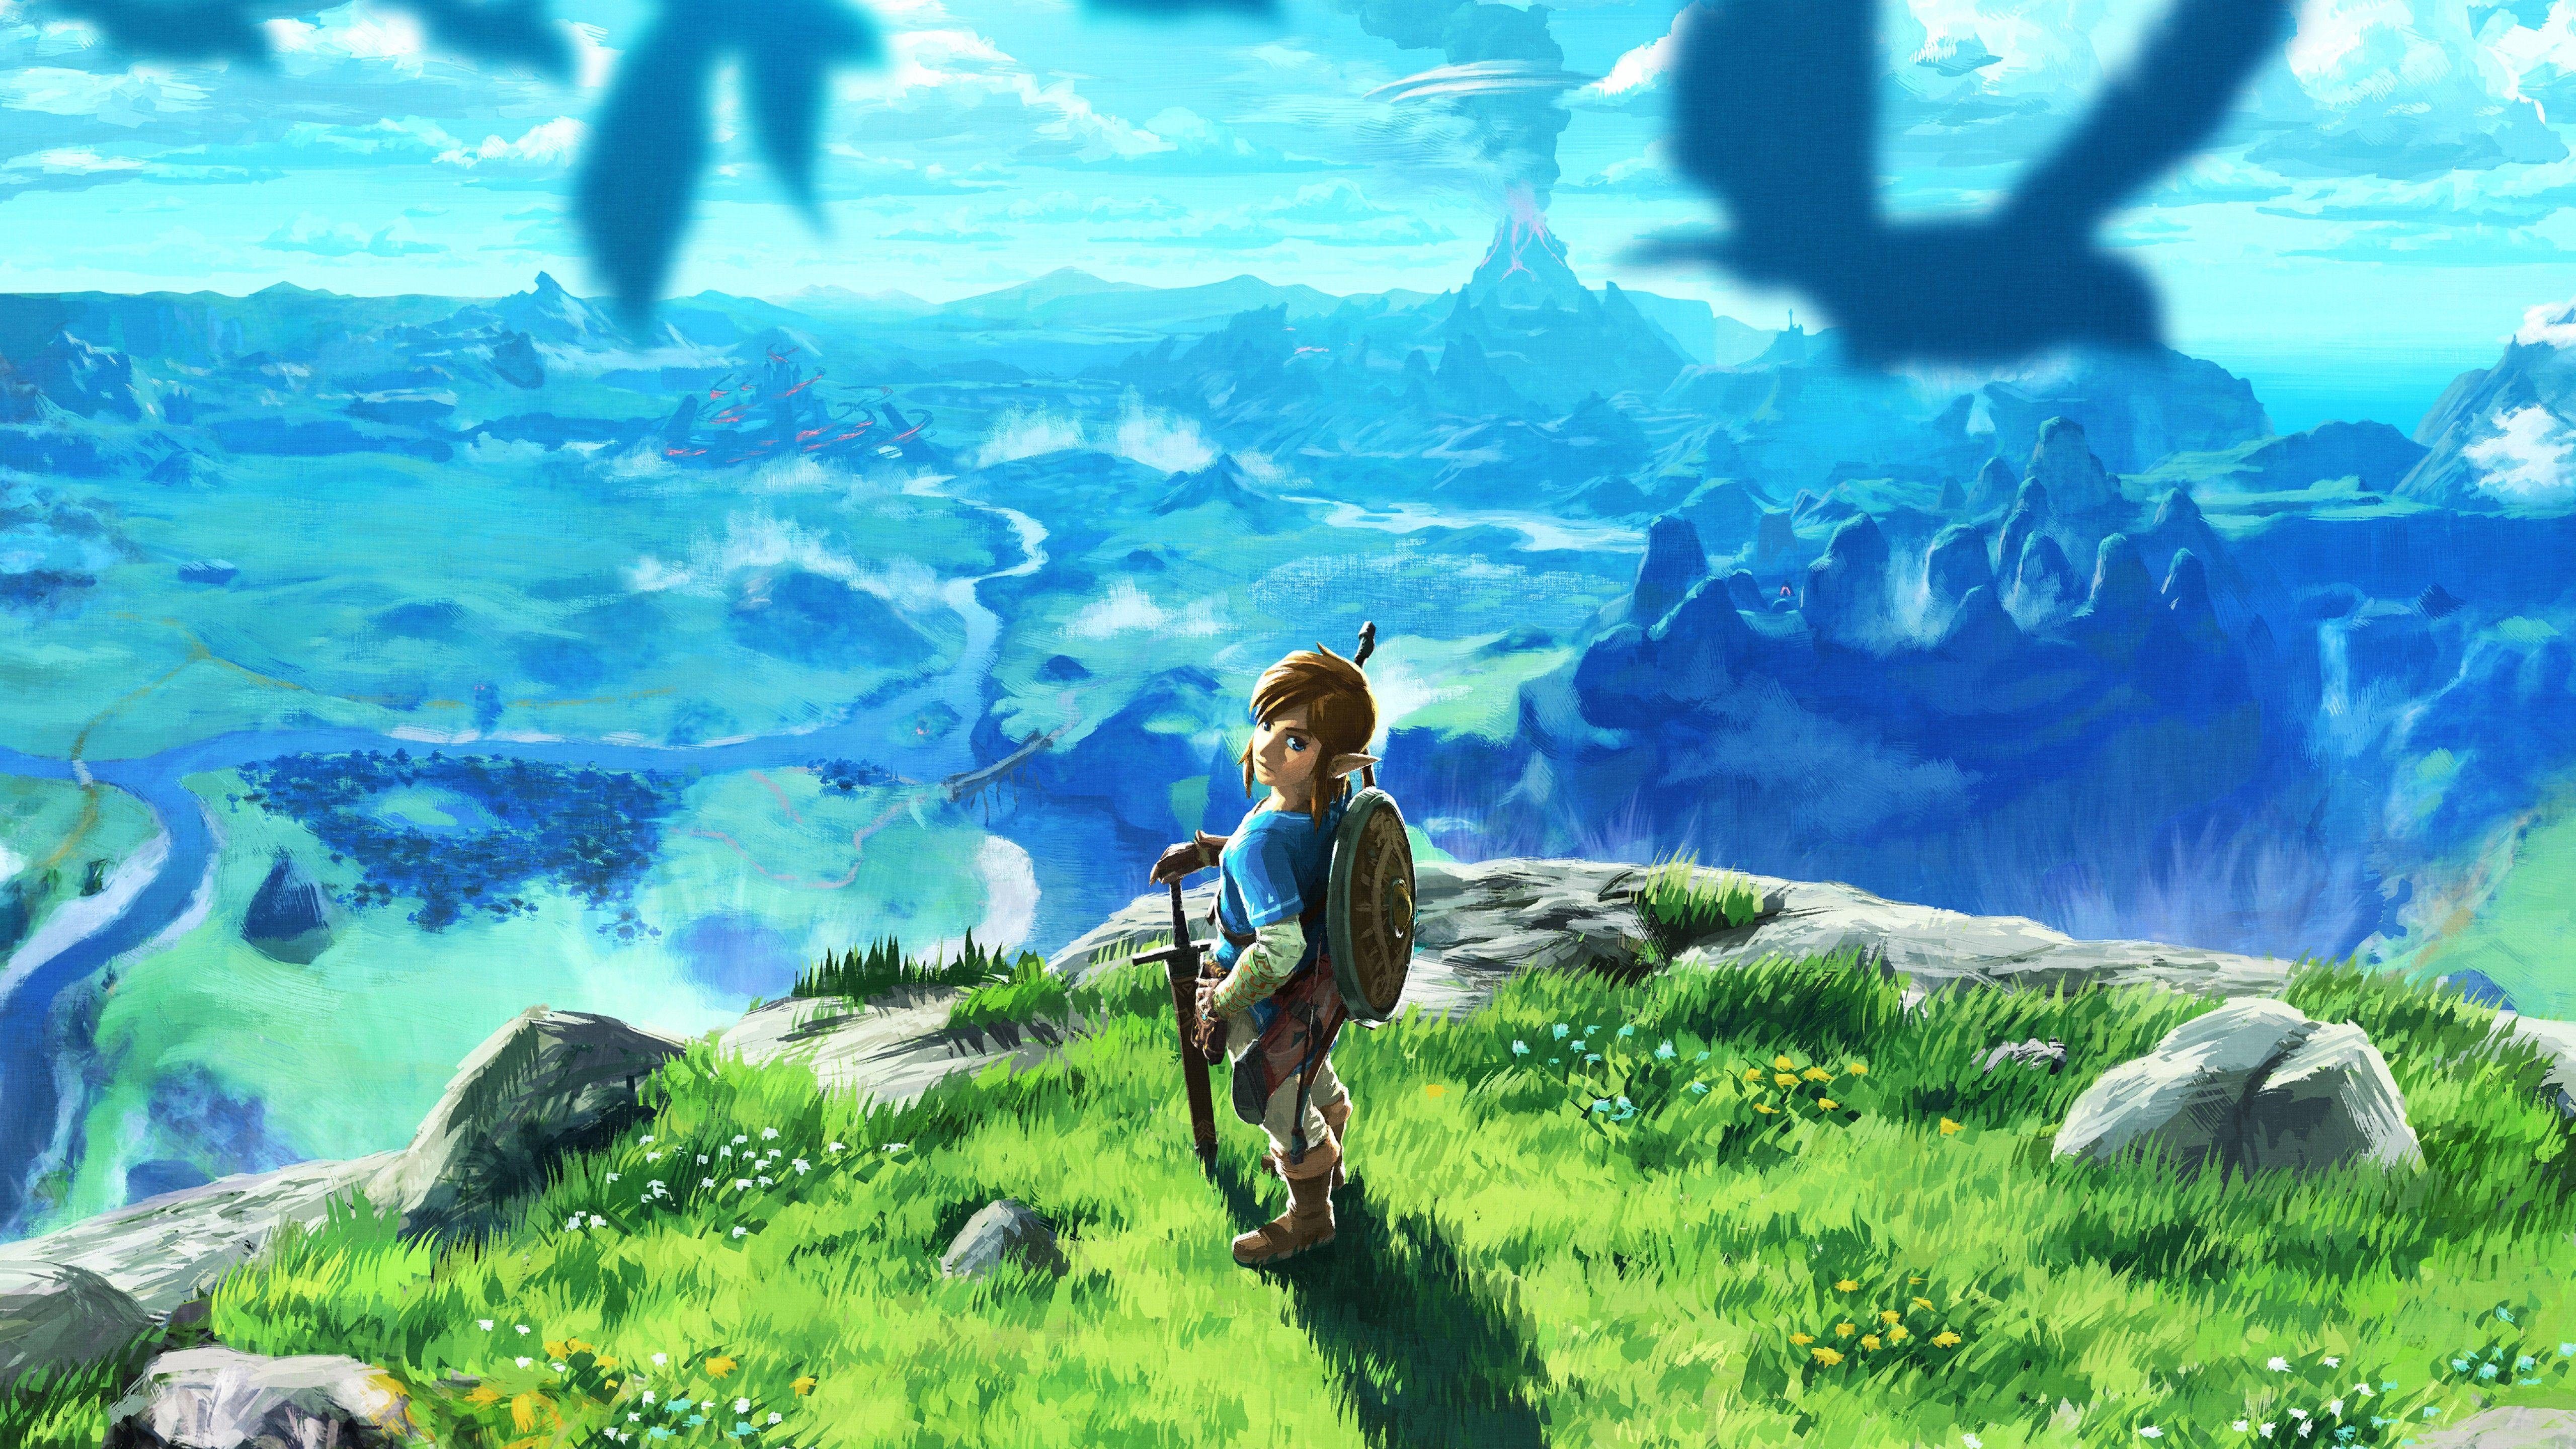 Wallpaper The Legend of Zelda: Breath of the Wild, 4K, Games